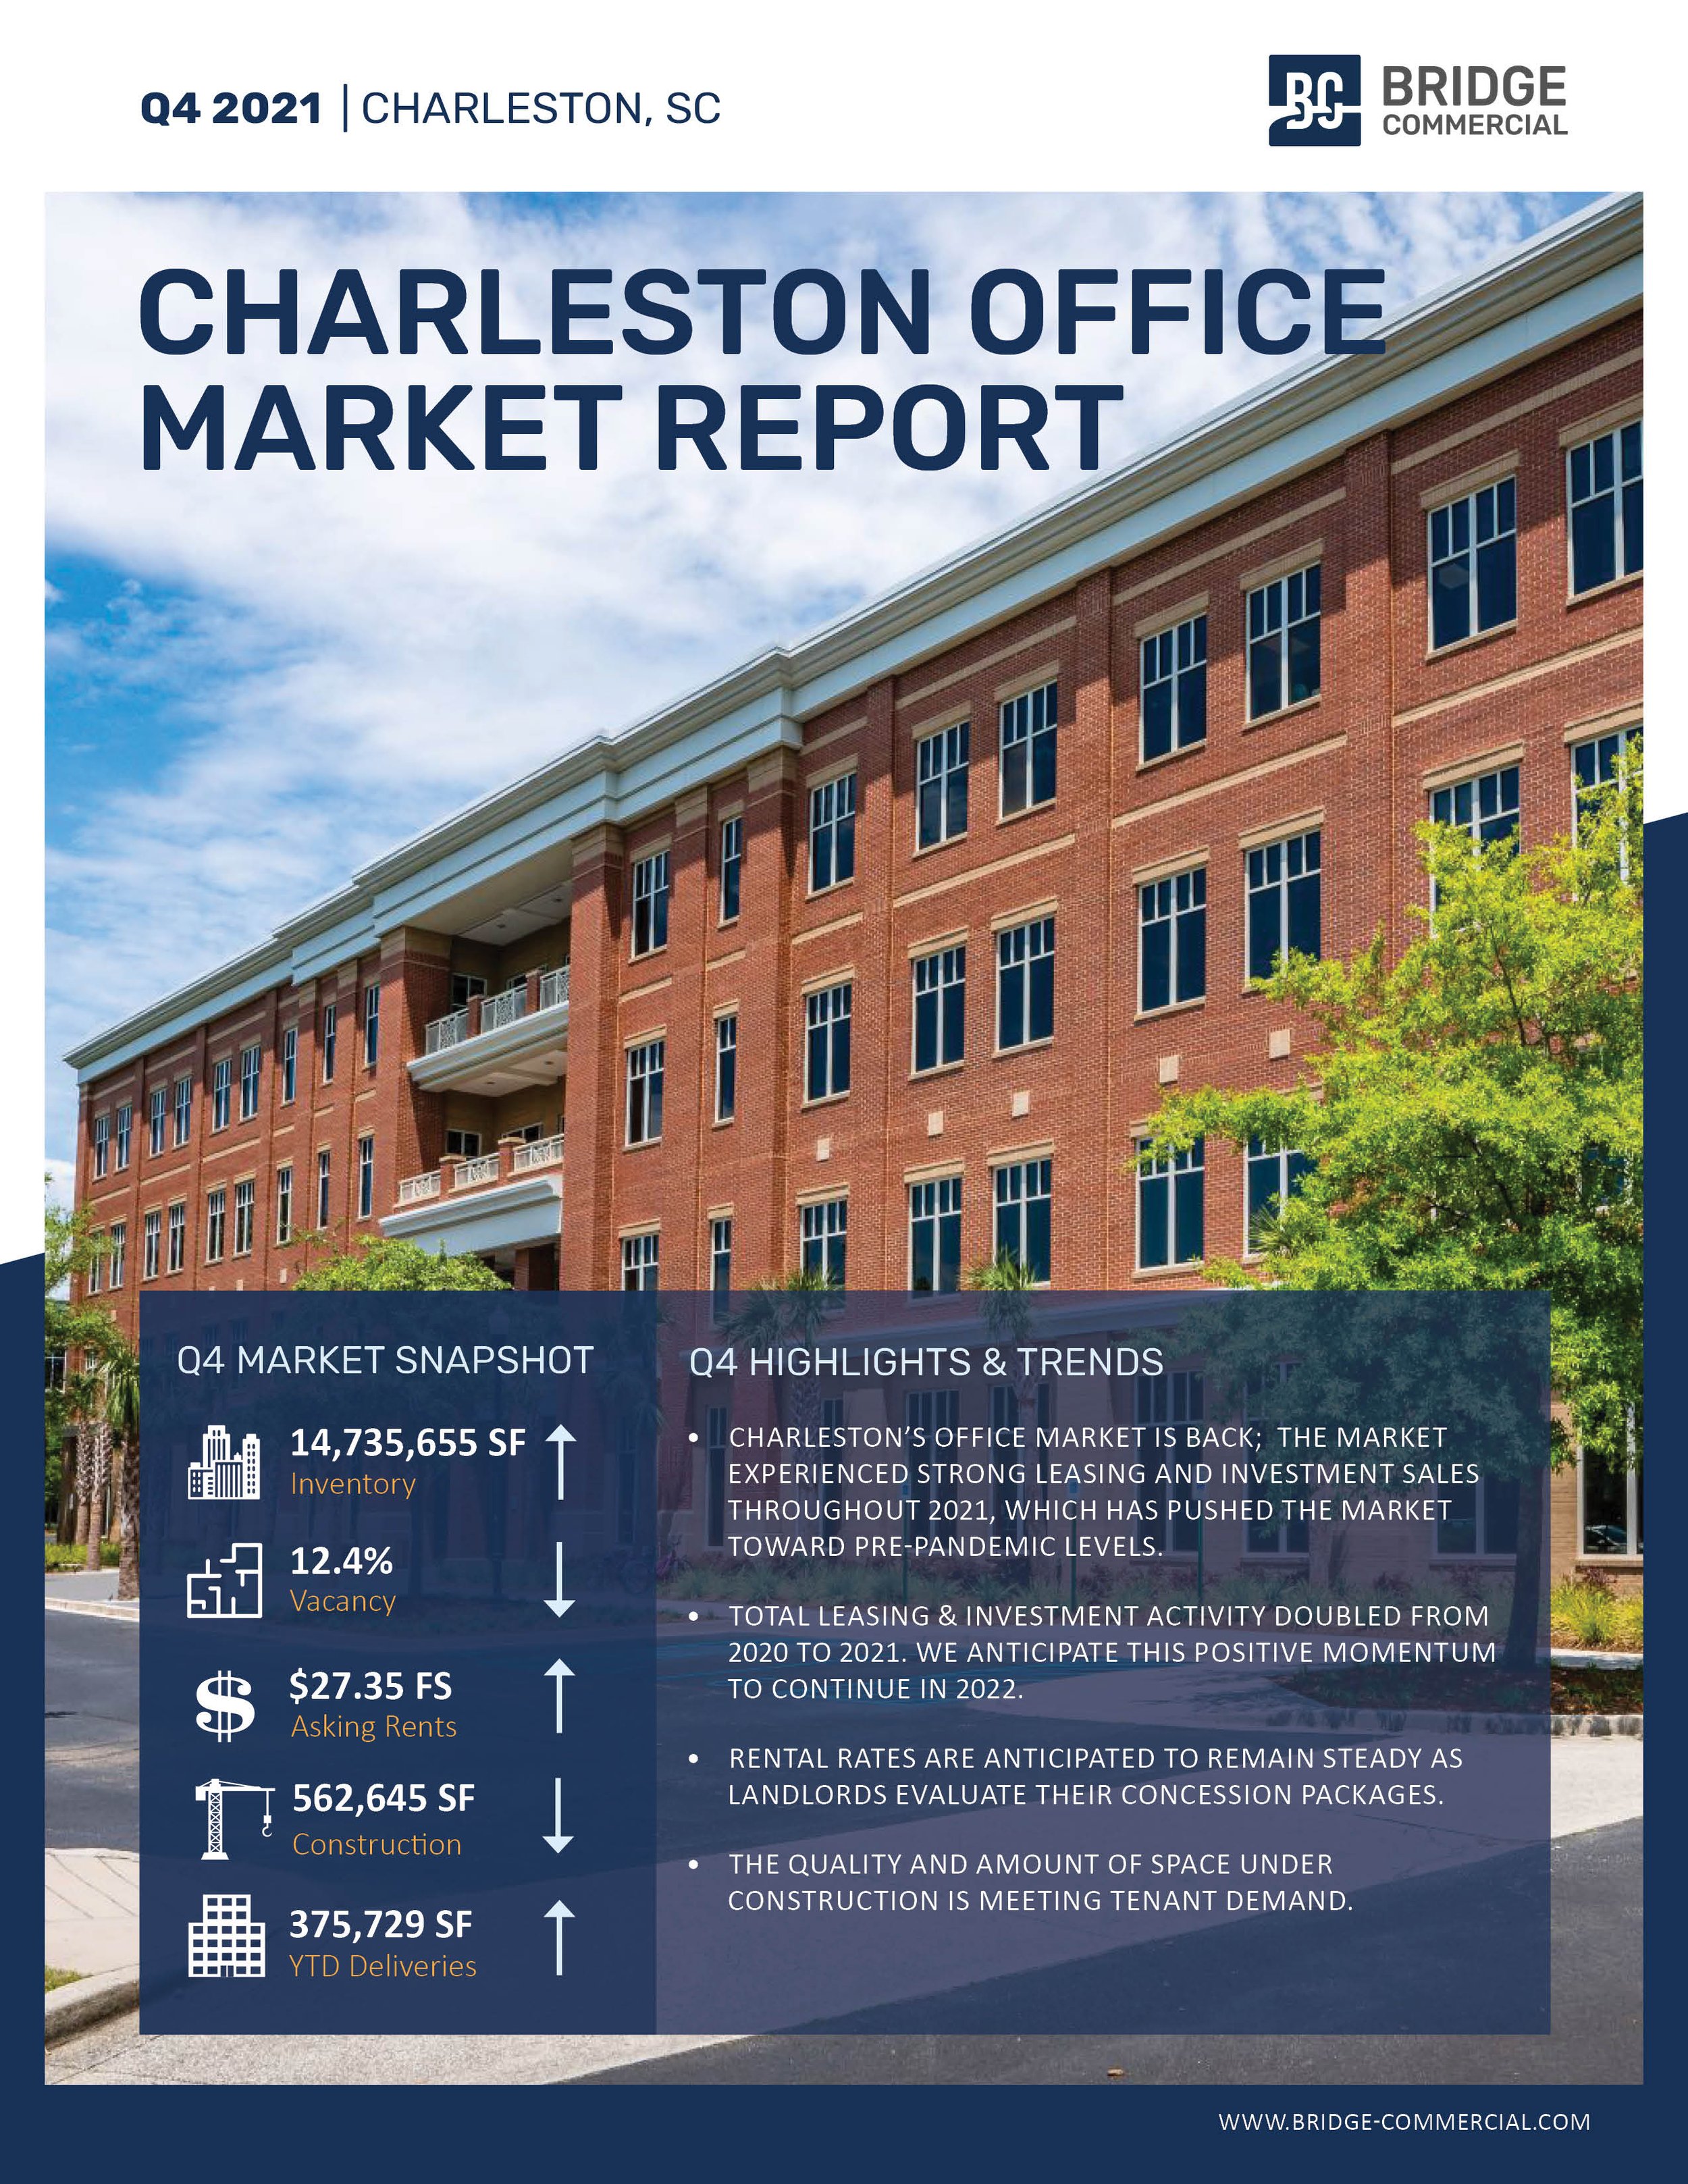 Q4 2021 Charleston Office Market Report_Bridge Commercial.jpg